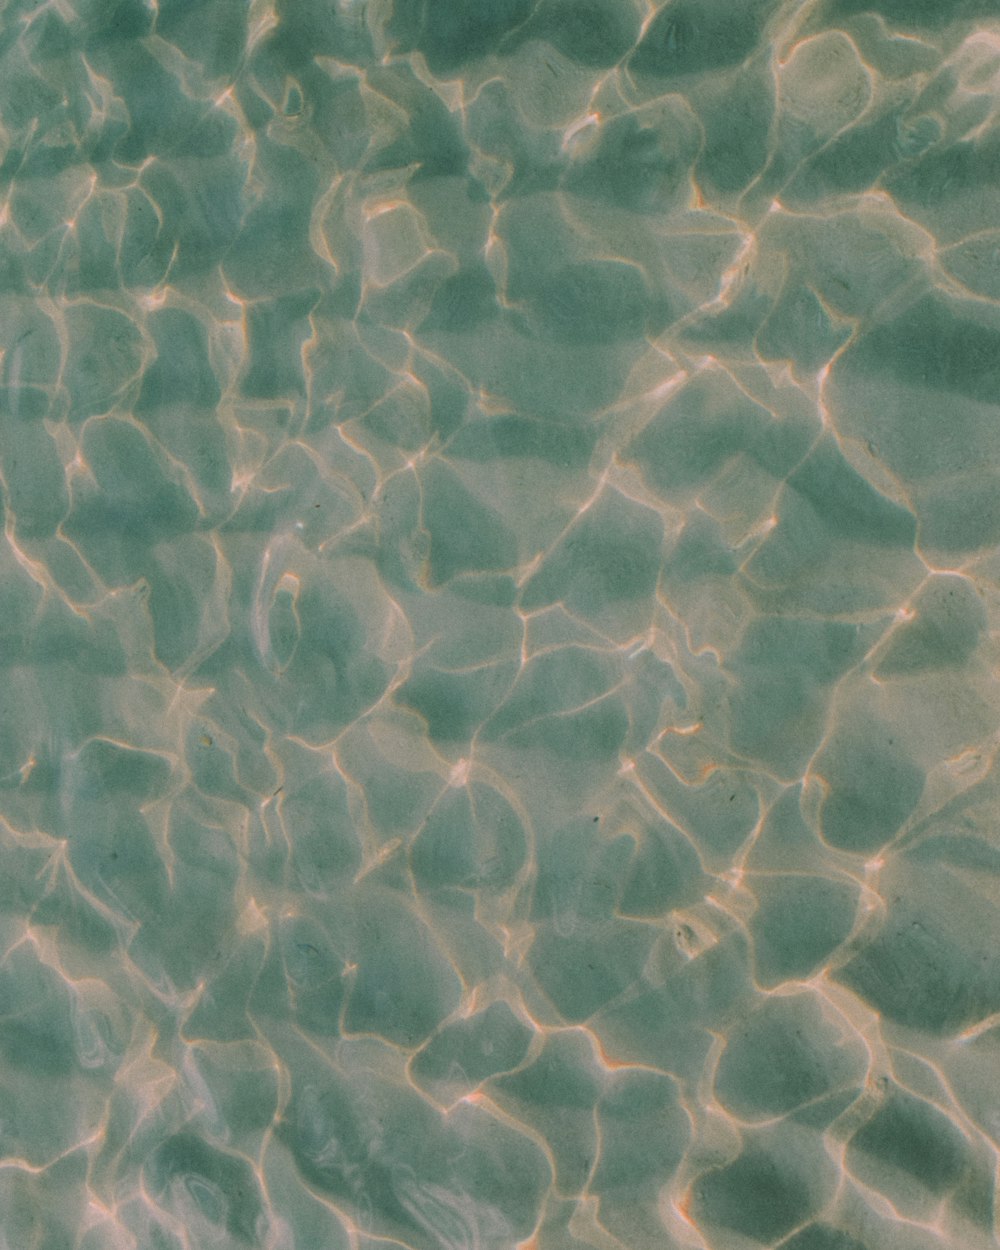 l'acqua riflette la luce del sole sulla sabbia